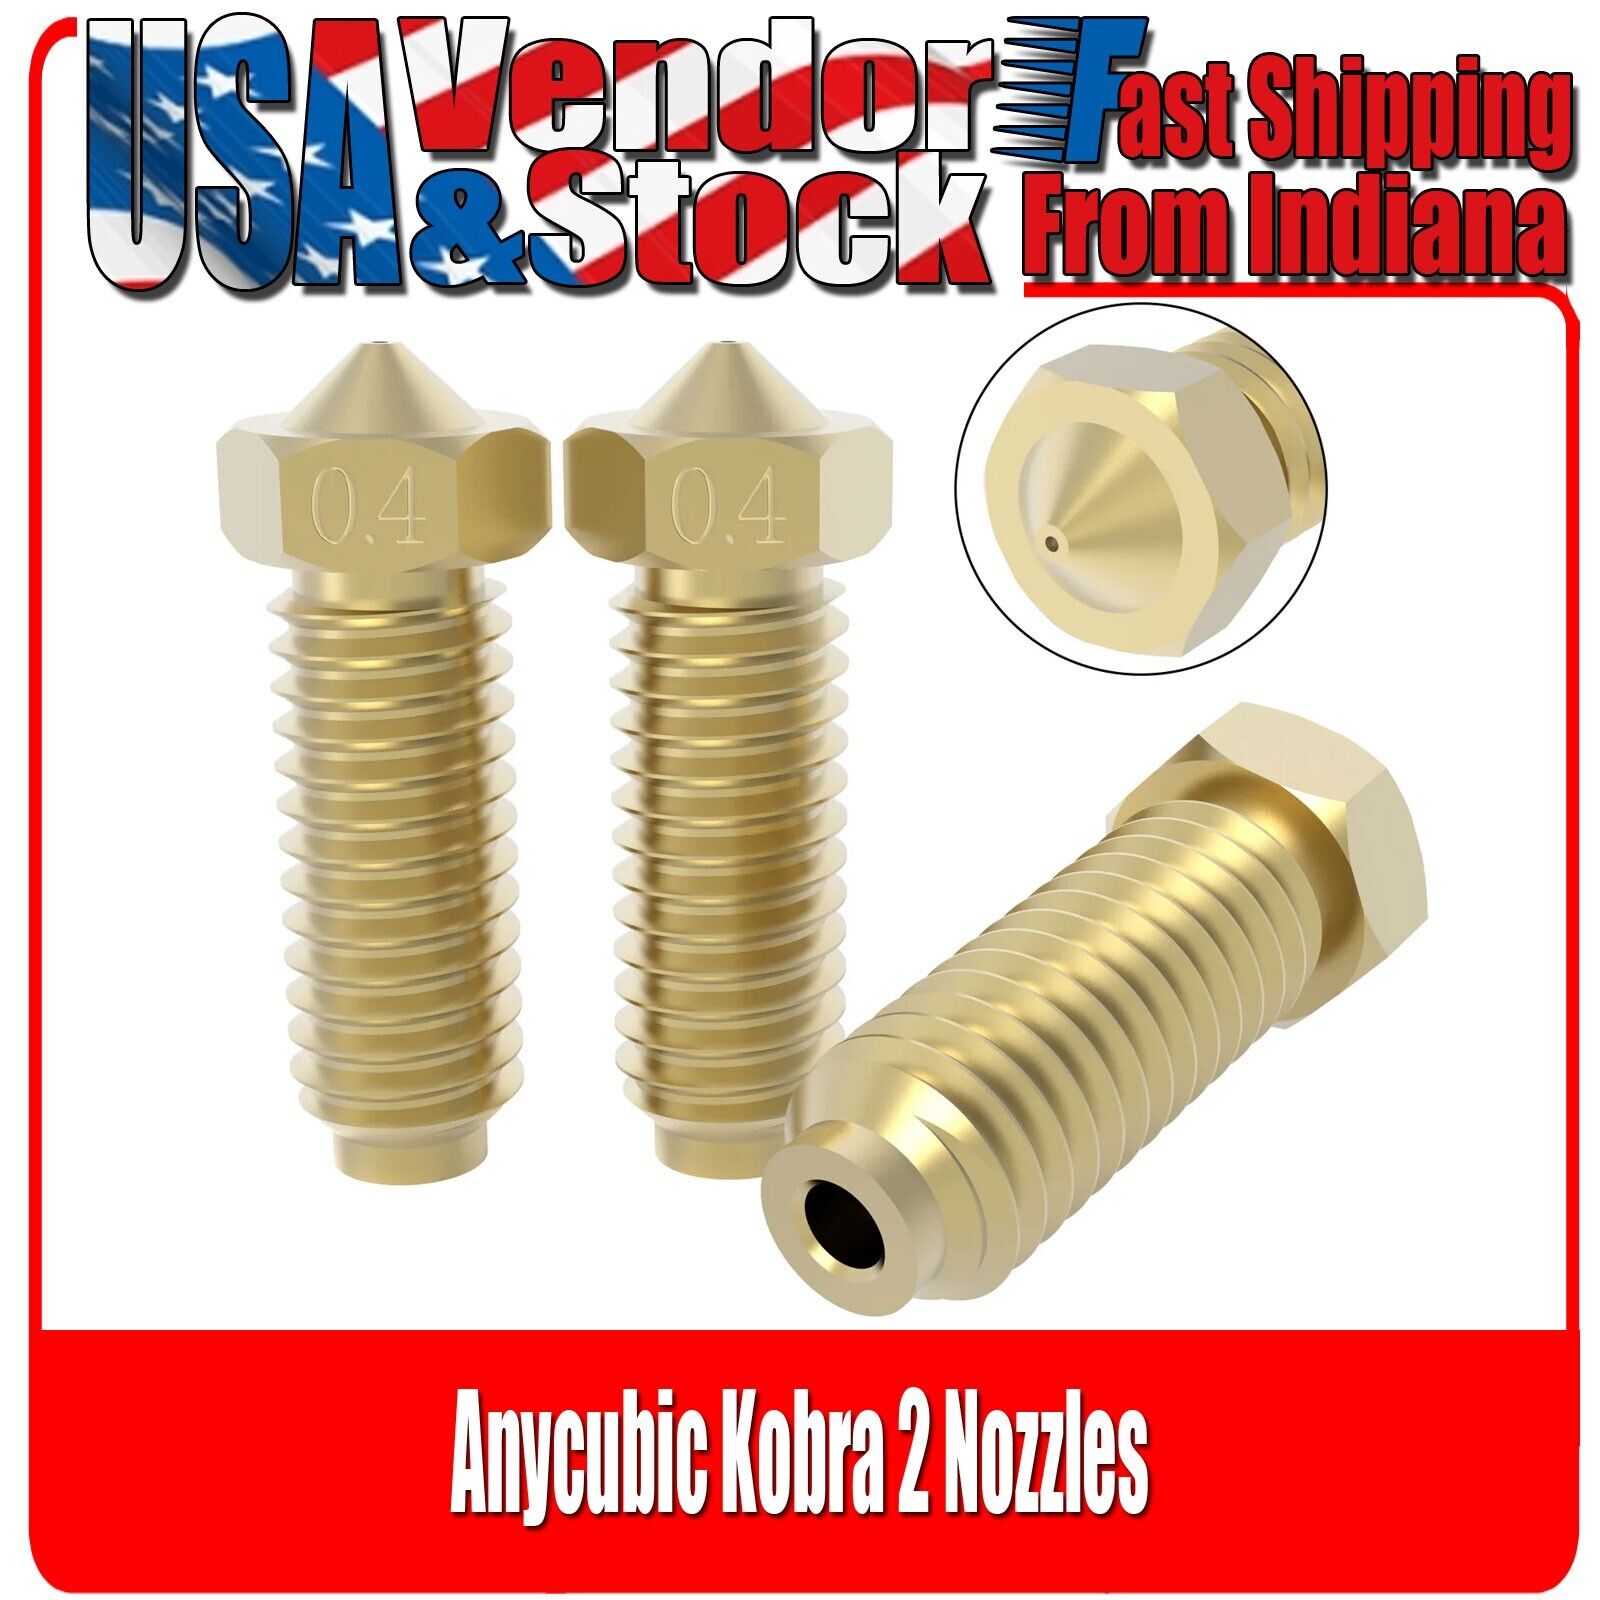 Anycubic Kobra 2 Nozzles